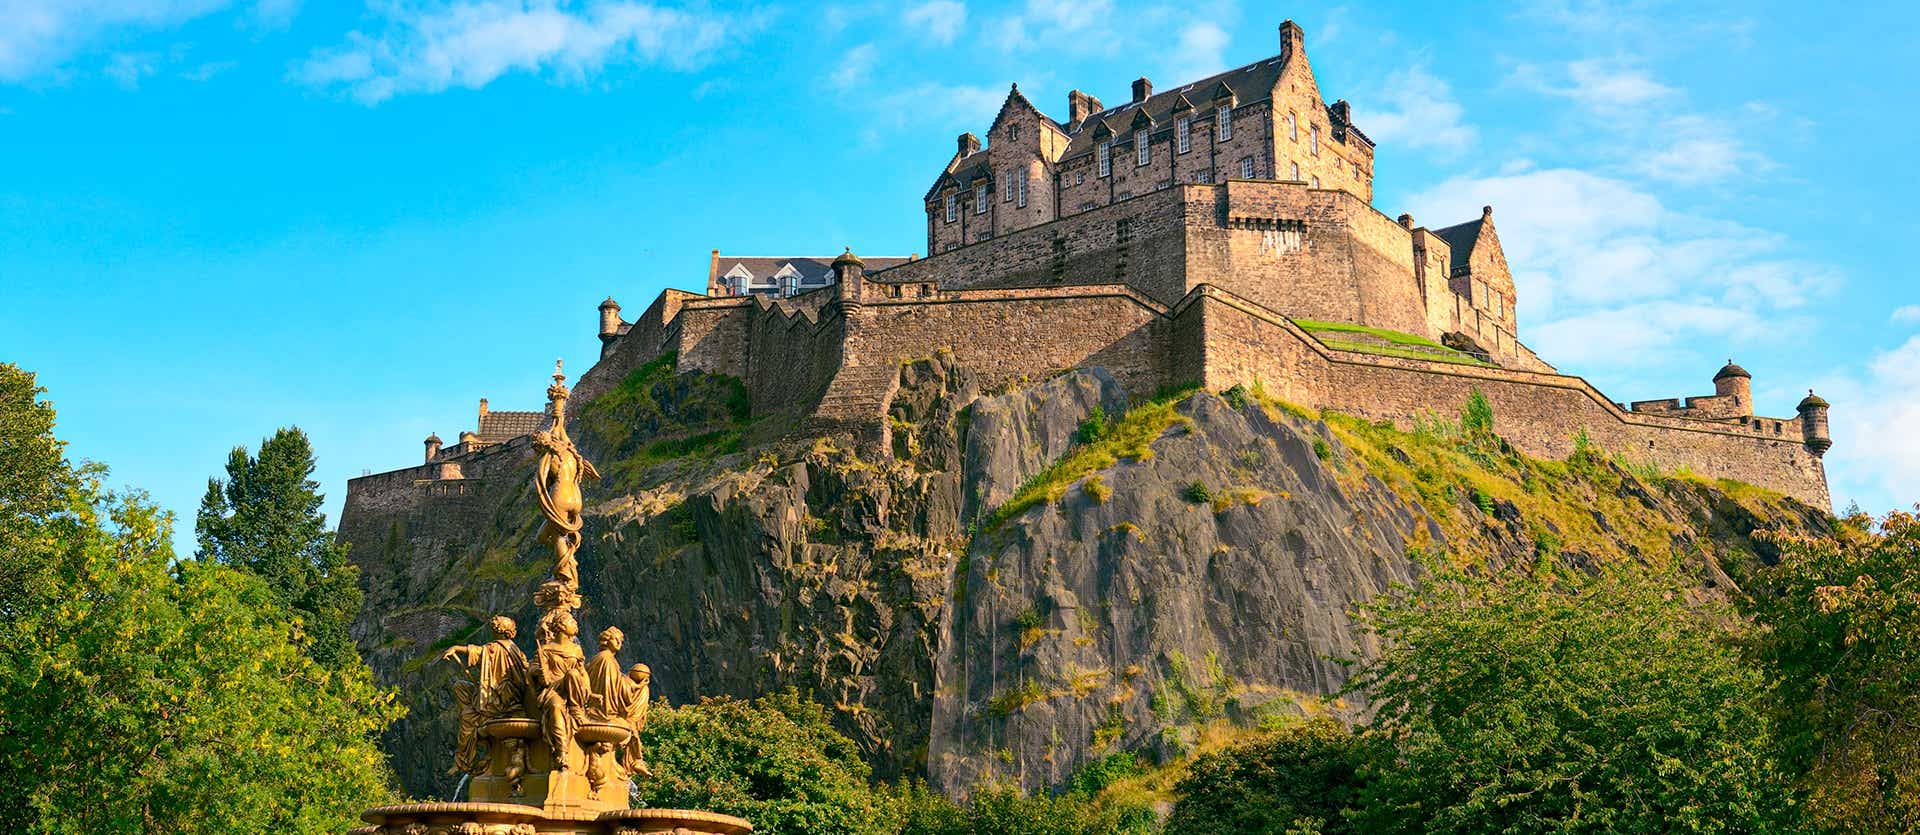 Castillo de Edimburgo <span class="iconos separador"></span> Escocia